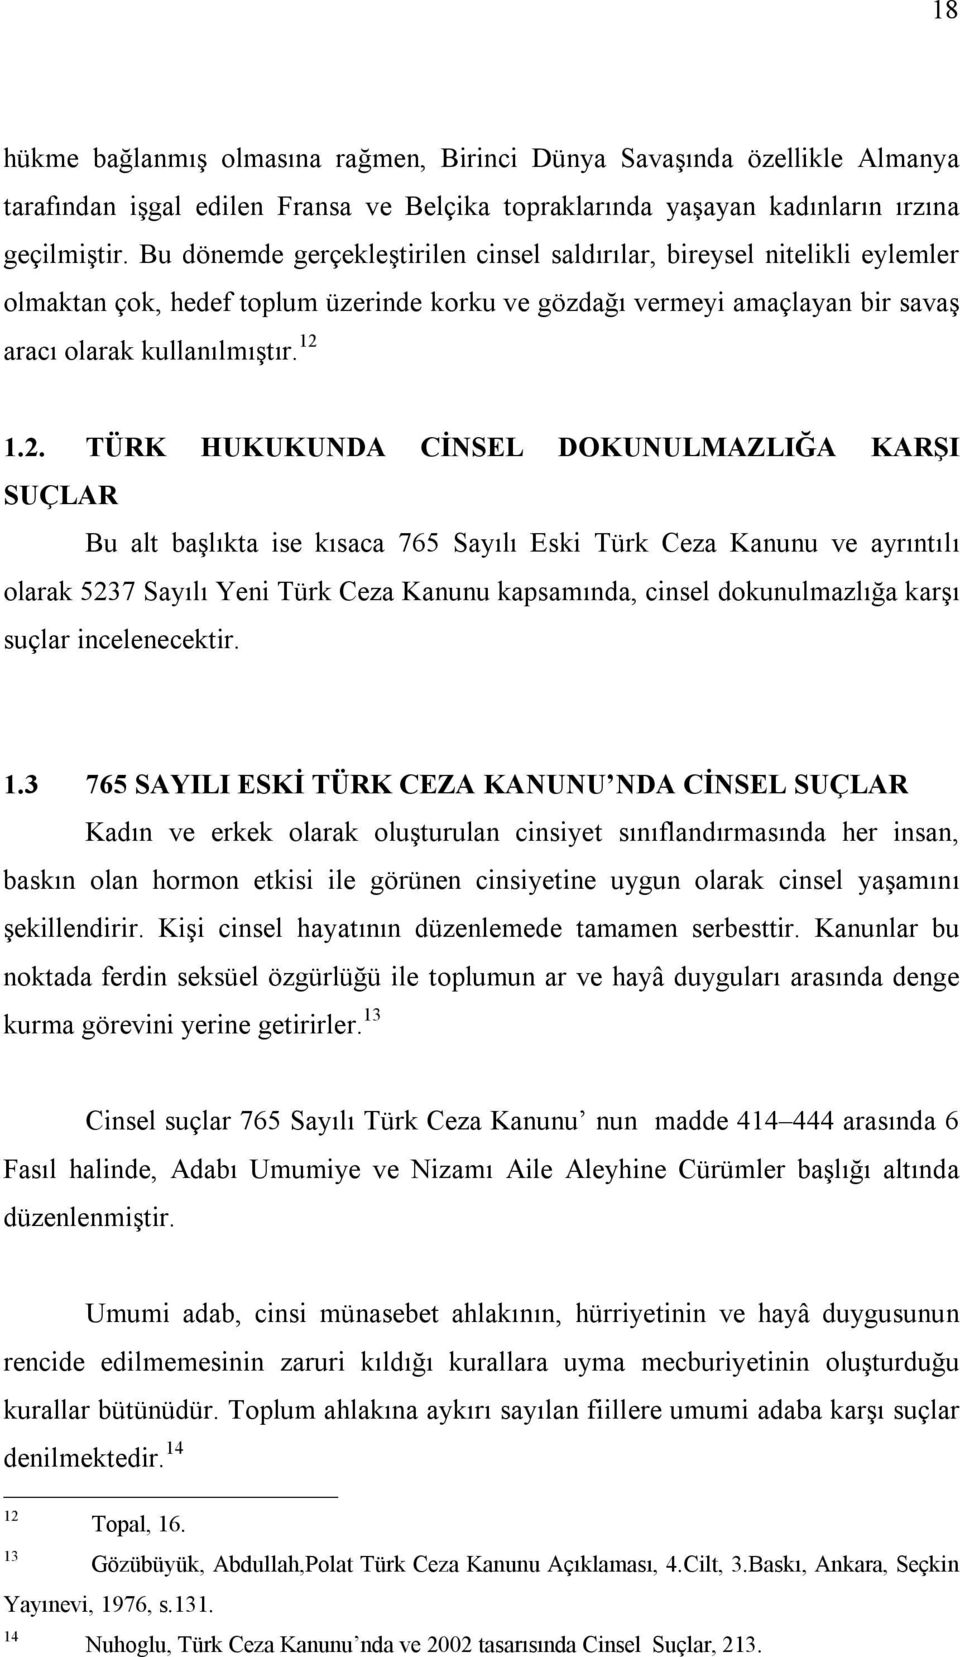 1.2. TÜRK HUKUKUNDA CİNSEL DOKUNULMAZLIĞA KARŞI SUÇLAR Bu alt başlıkta ise kısaca 765 Sayılı Eski Türk Ceza Kanunu ve ayrıntılı olarak 5237 Sayılı Yeni Türk Ceza Kanunu kapsamında, cinsel